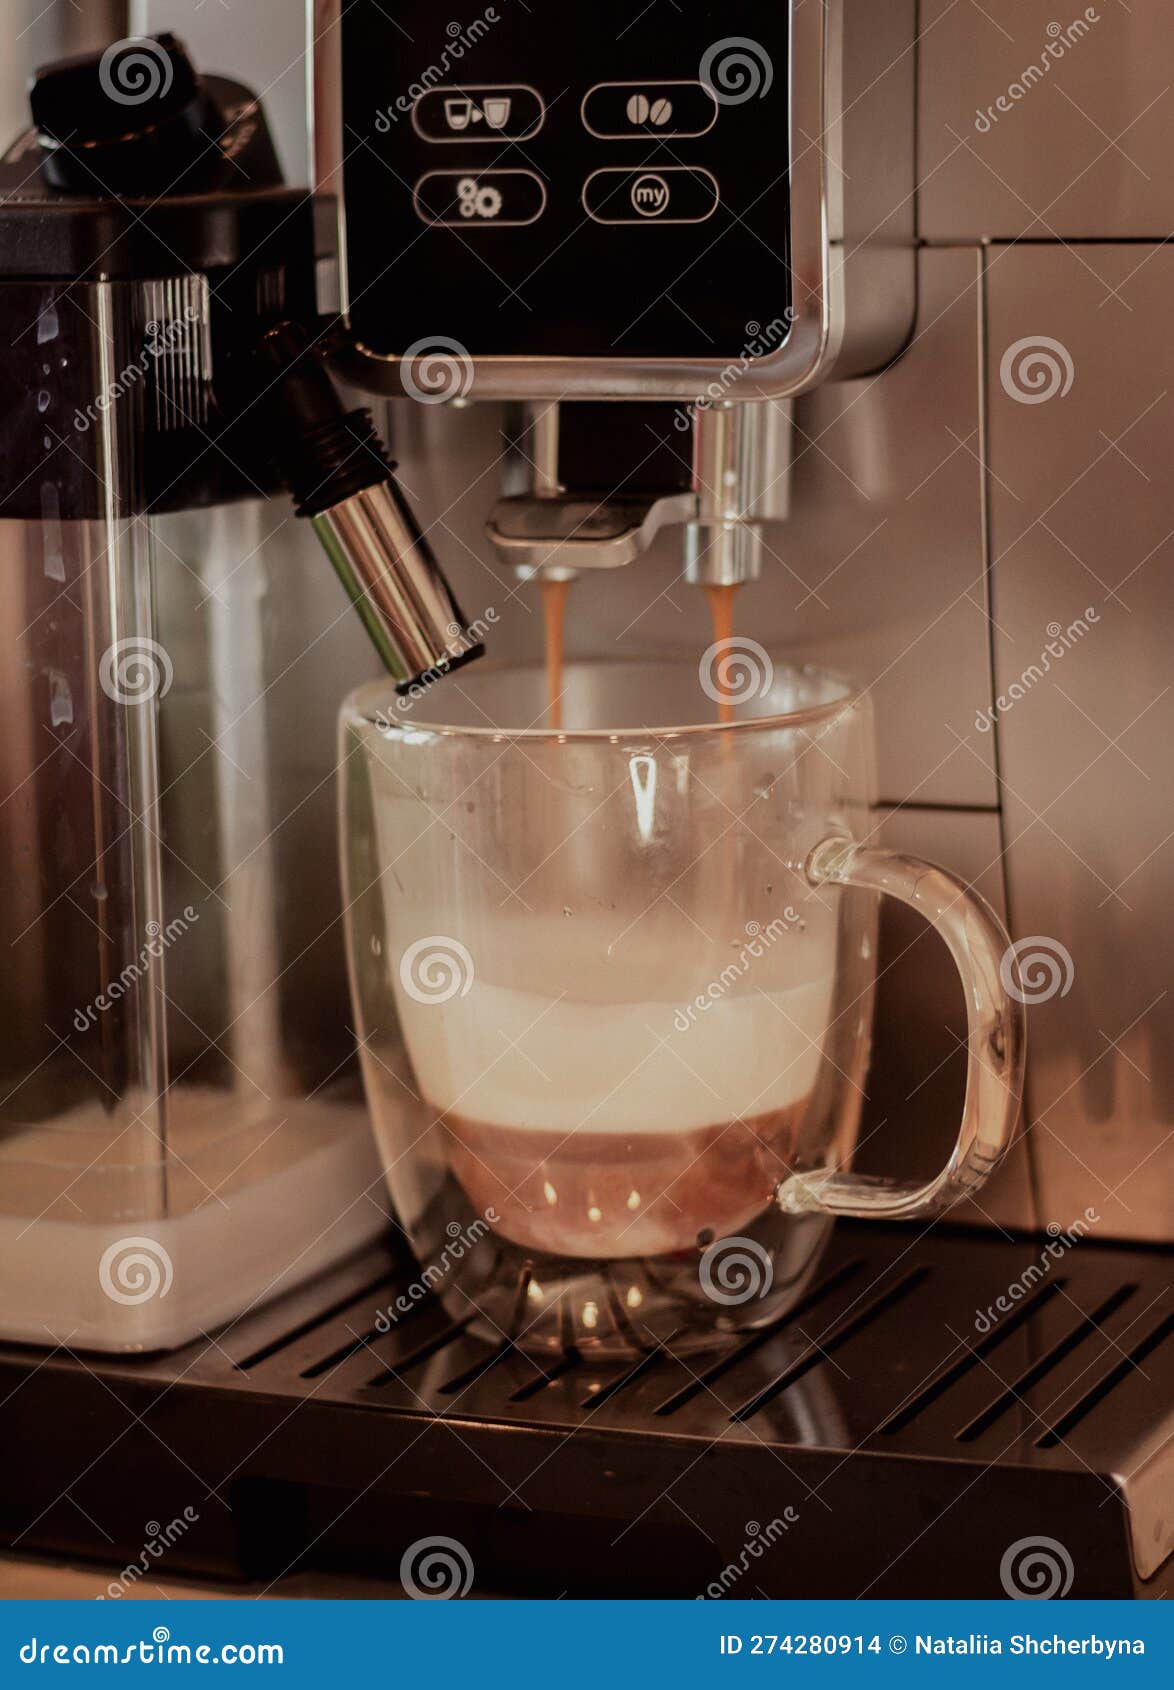 Macchina Da Caffè in Un Caffè. Bevanda Di Caffè. Cappuccino. Bevande Al  Mattino. Preparazione Di Latte. Fotografia Stock - Immagine di isolato,  creatore: 274280914